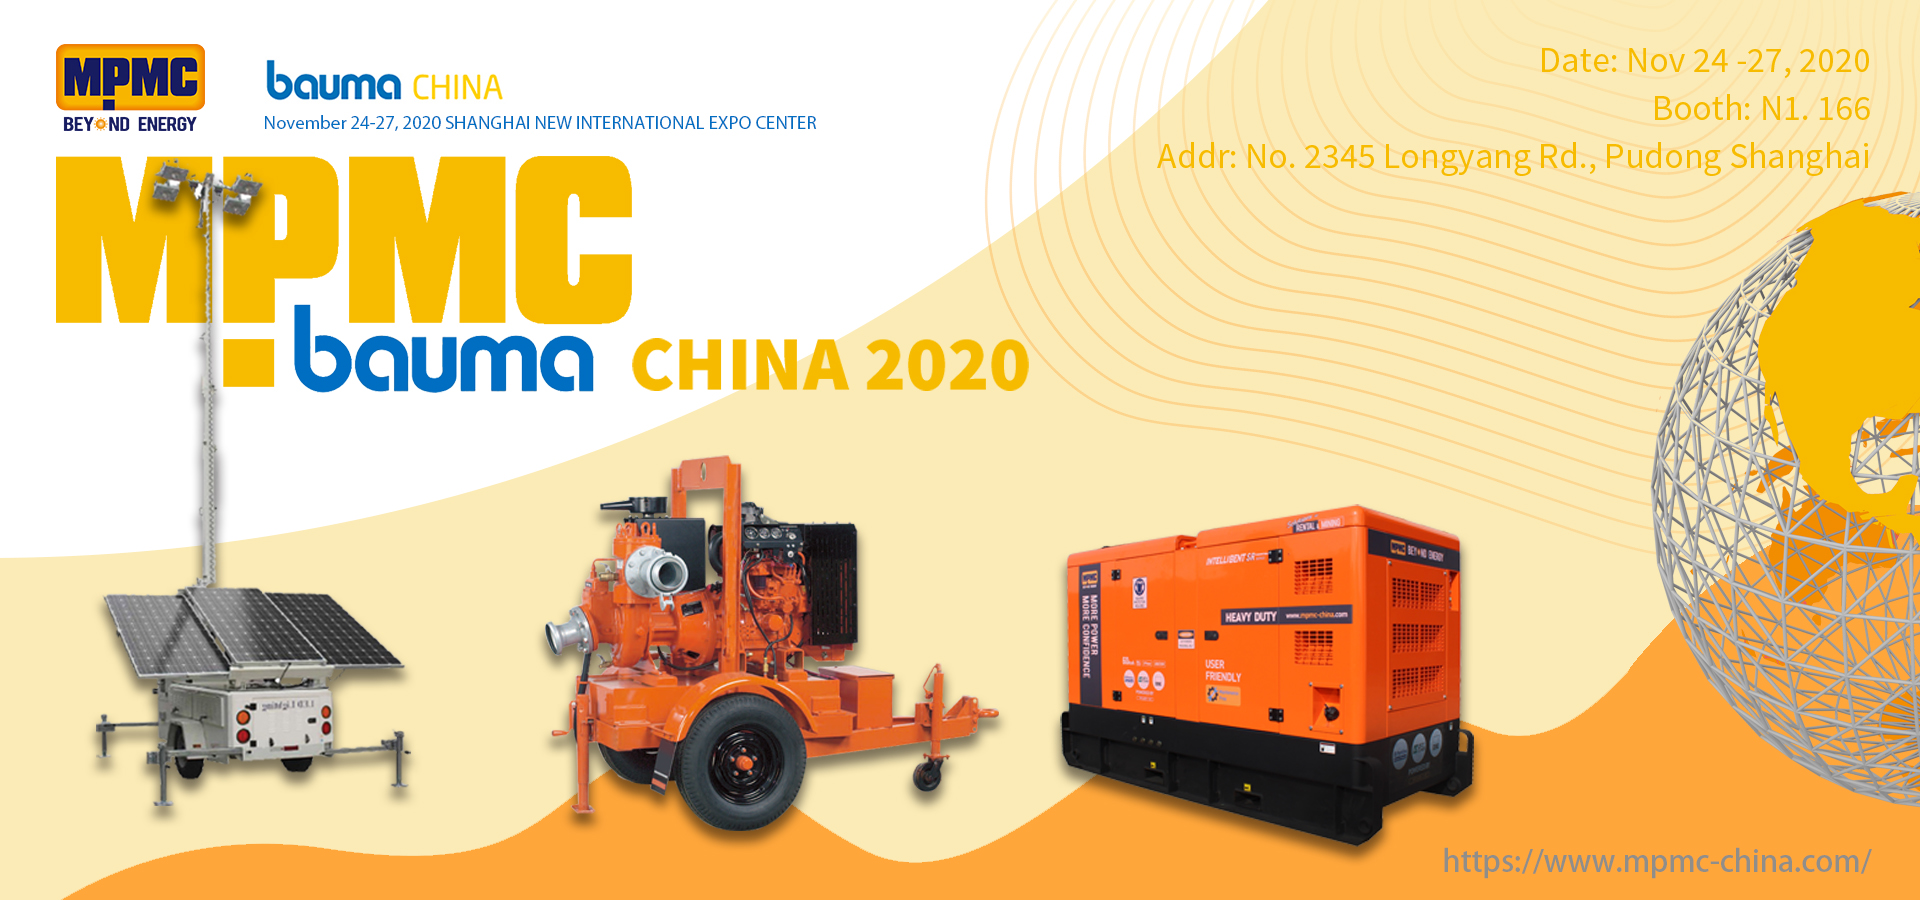 Meet Us at BAUMA China 2020 - MPMC Bringing NEW!